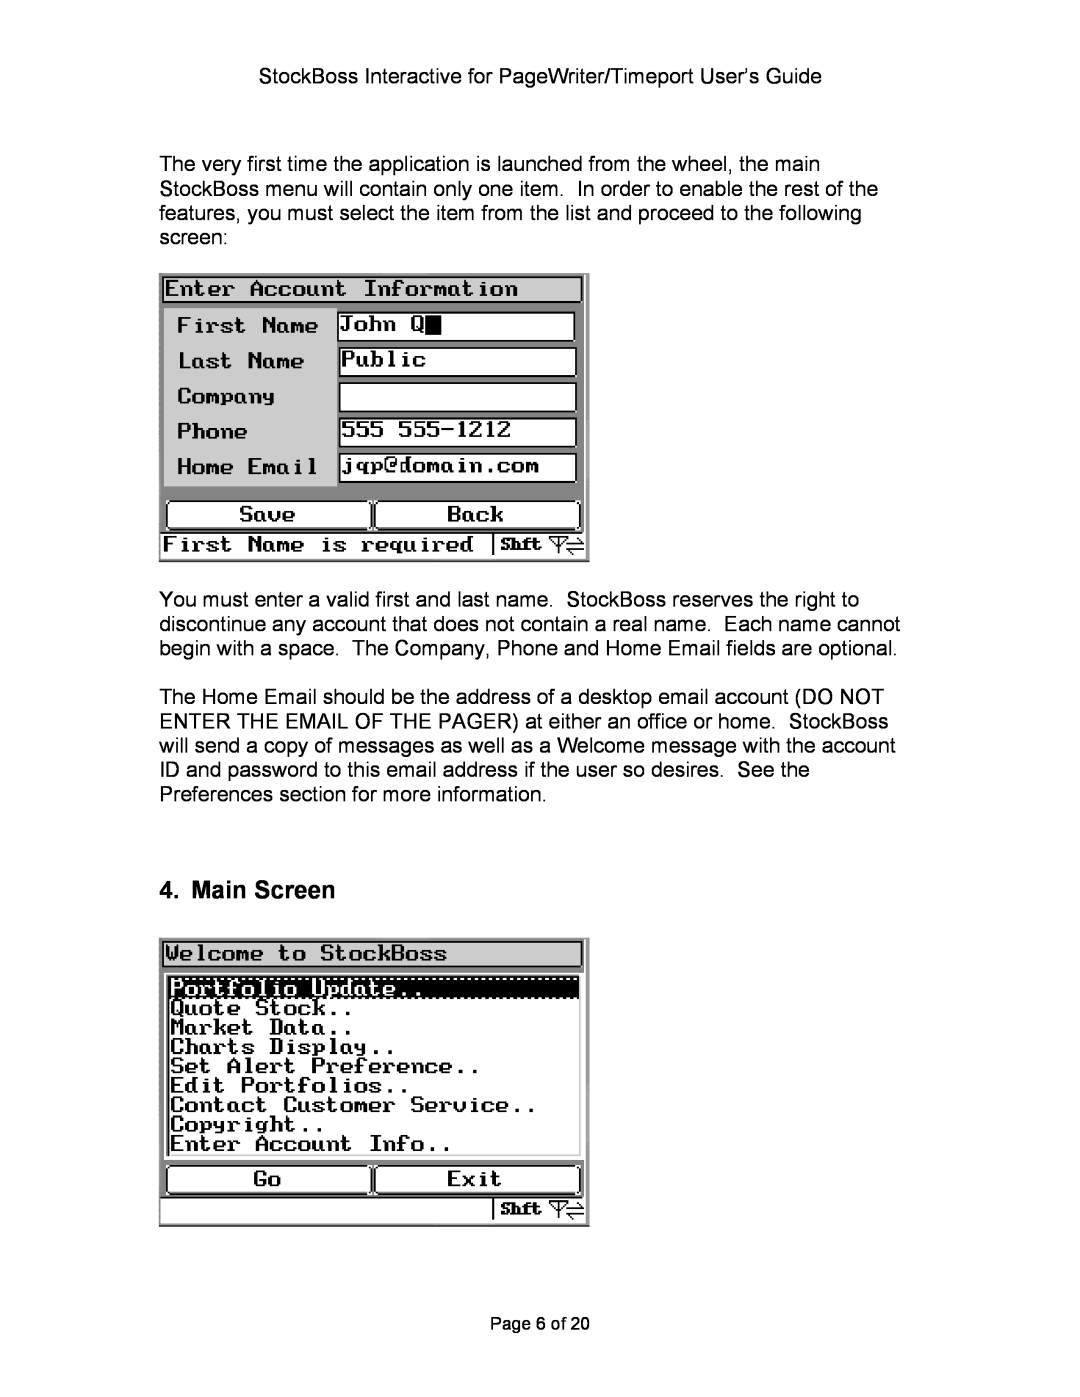 Motorola P930 Series manual Main Screen, Page 6 of 